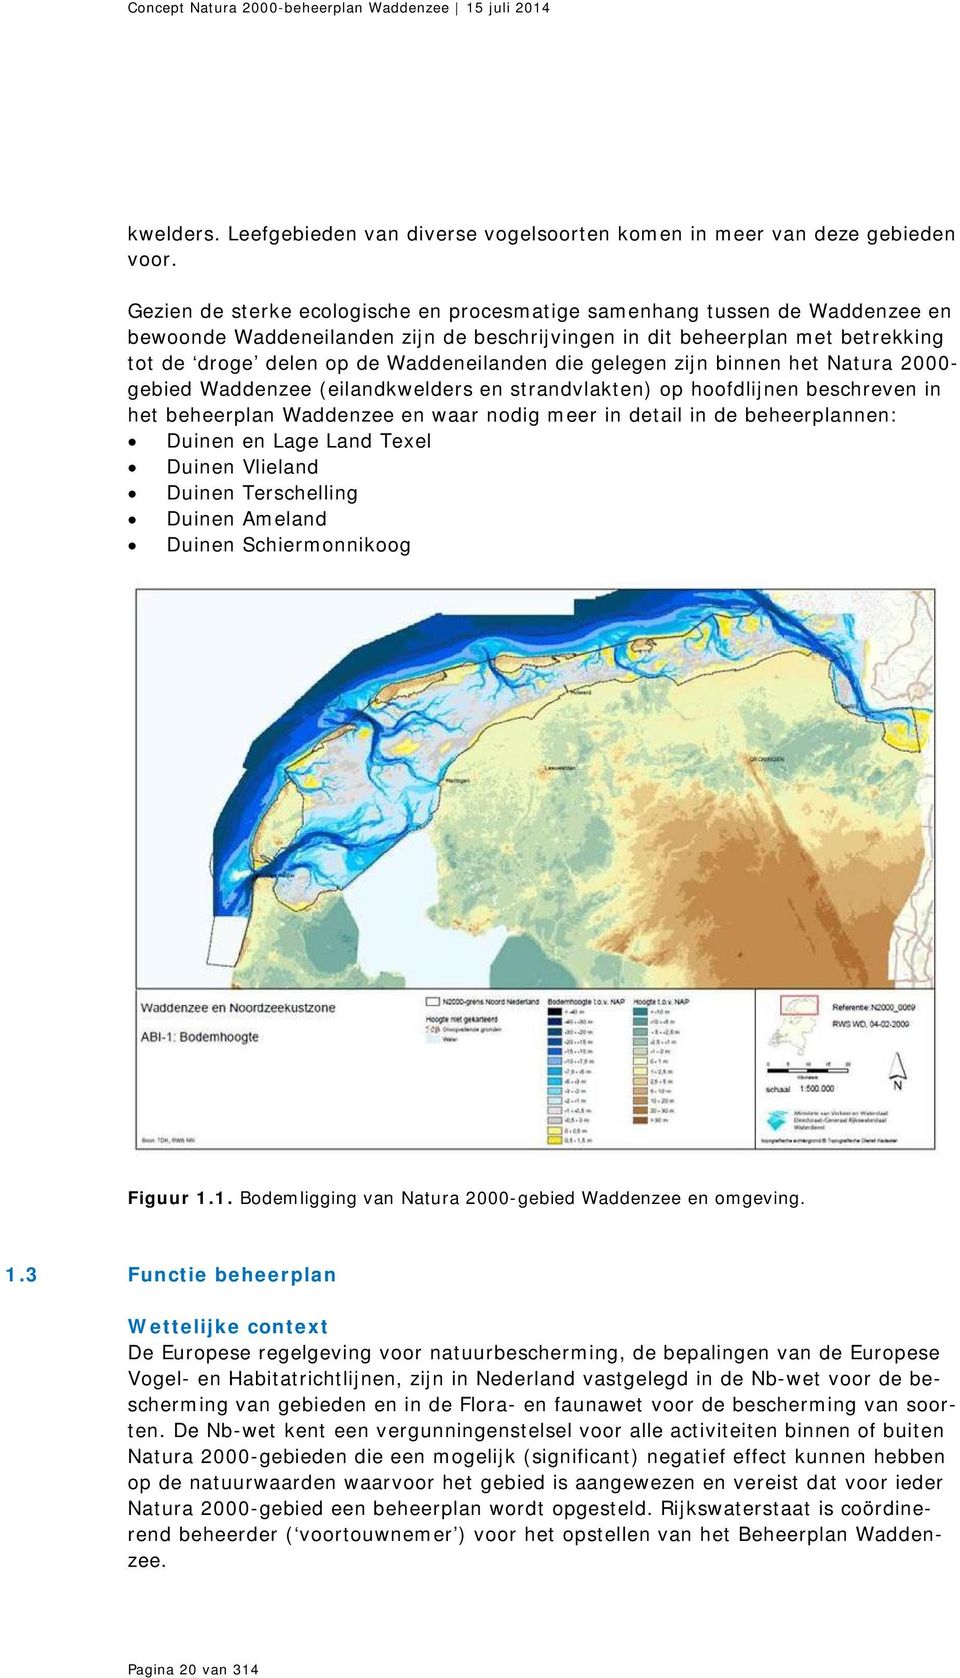 die gelegen zijn binnen het Natura 2000- gebied Waddenzee (eilandkwelders en strandvlakten) op hoofdlijnen beschreven in het beheerplan Waddenzee en waar nodig meer in detail in de beheerplannen: